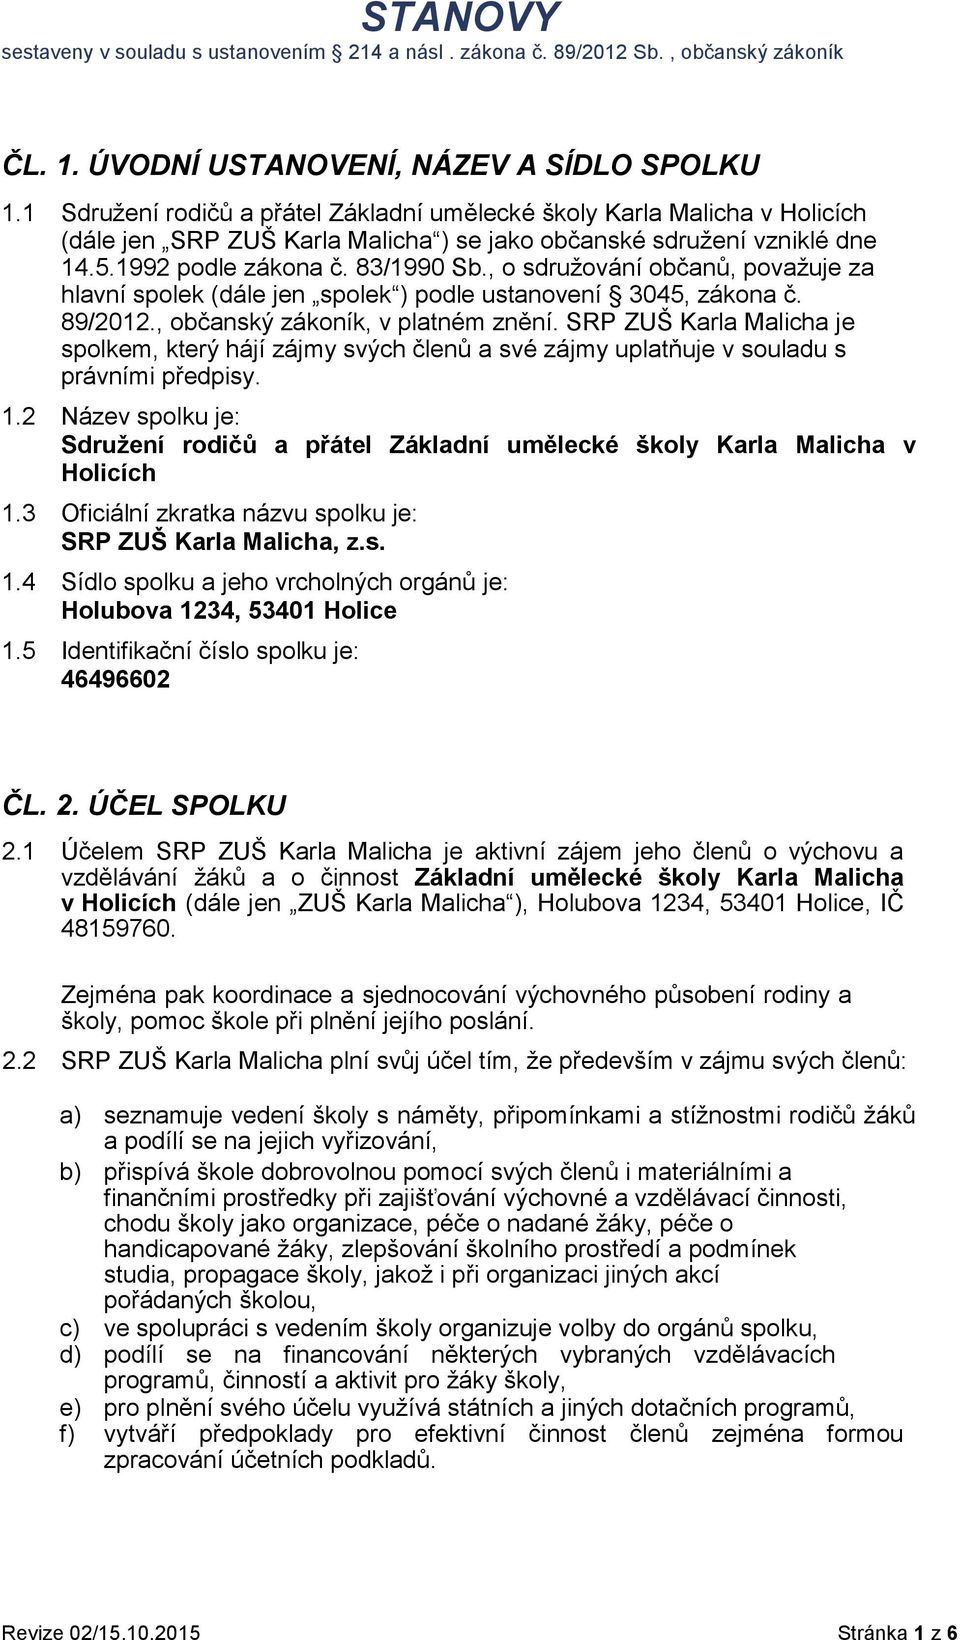 SRP ZUŠ Karla Malicha je spolkem, který hájí zájmy svých členů a své zájmy uplatňuje v souladu s právními předpisy. 1.